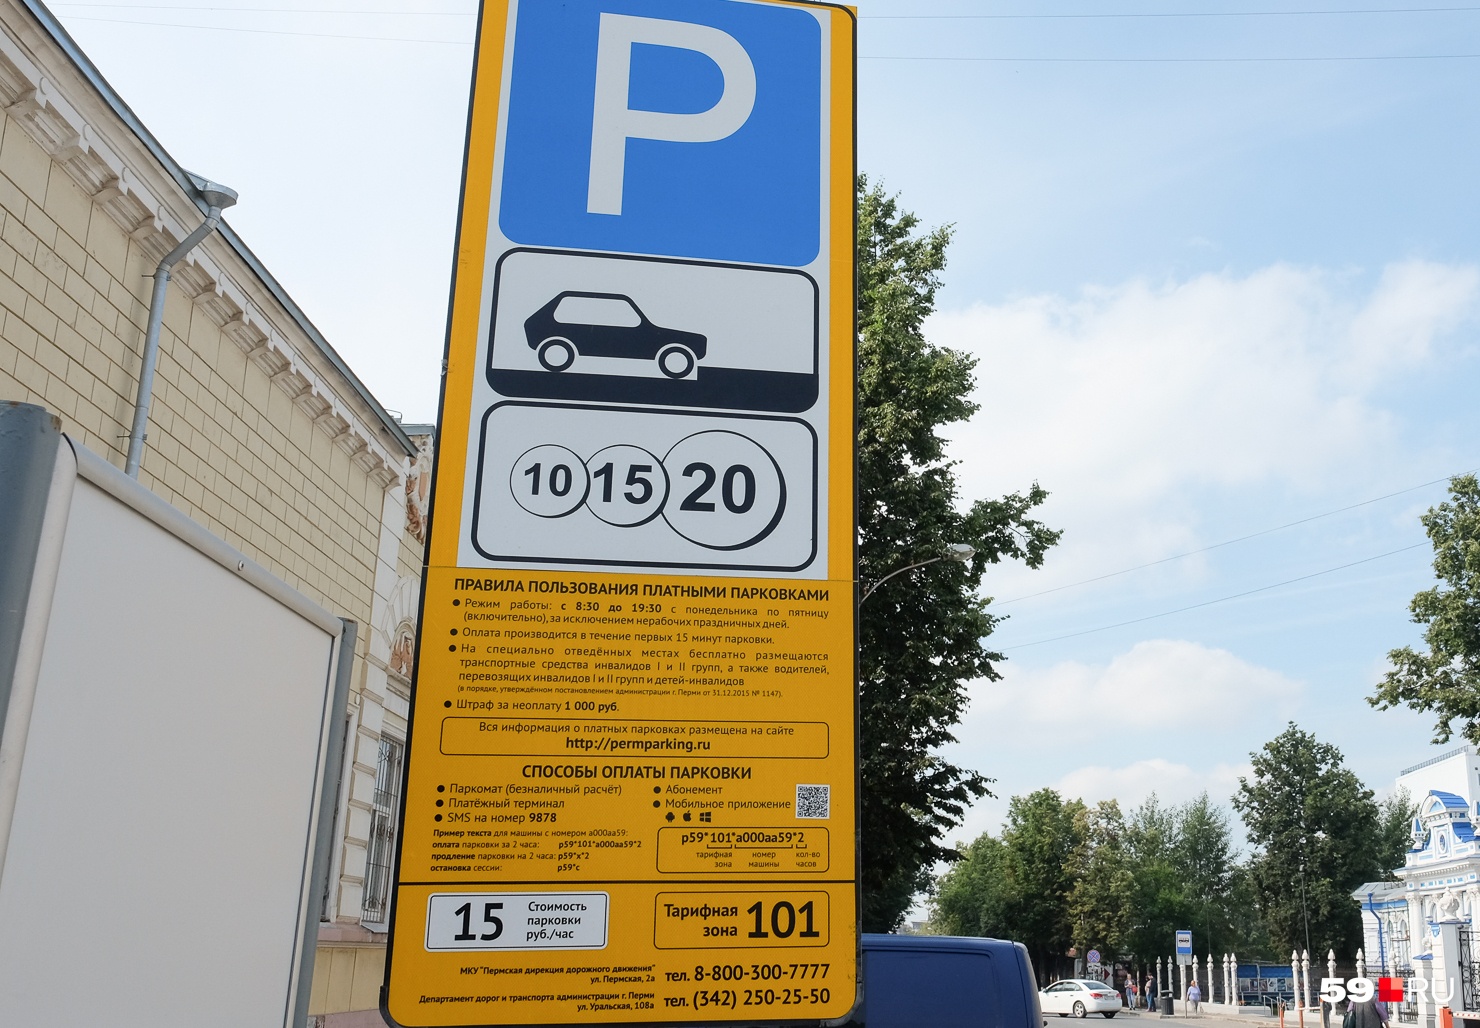 Бесплатное время на платной парковке: Сколько времени можно бесплатно стоять на платной парковке? | Пробки/дороги | Авто